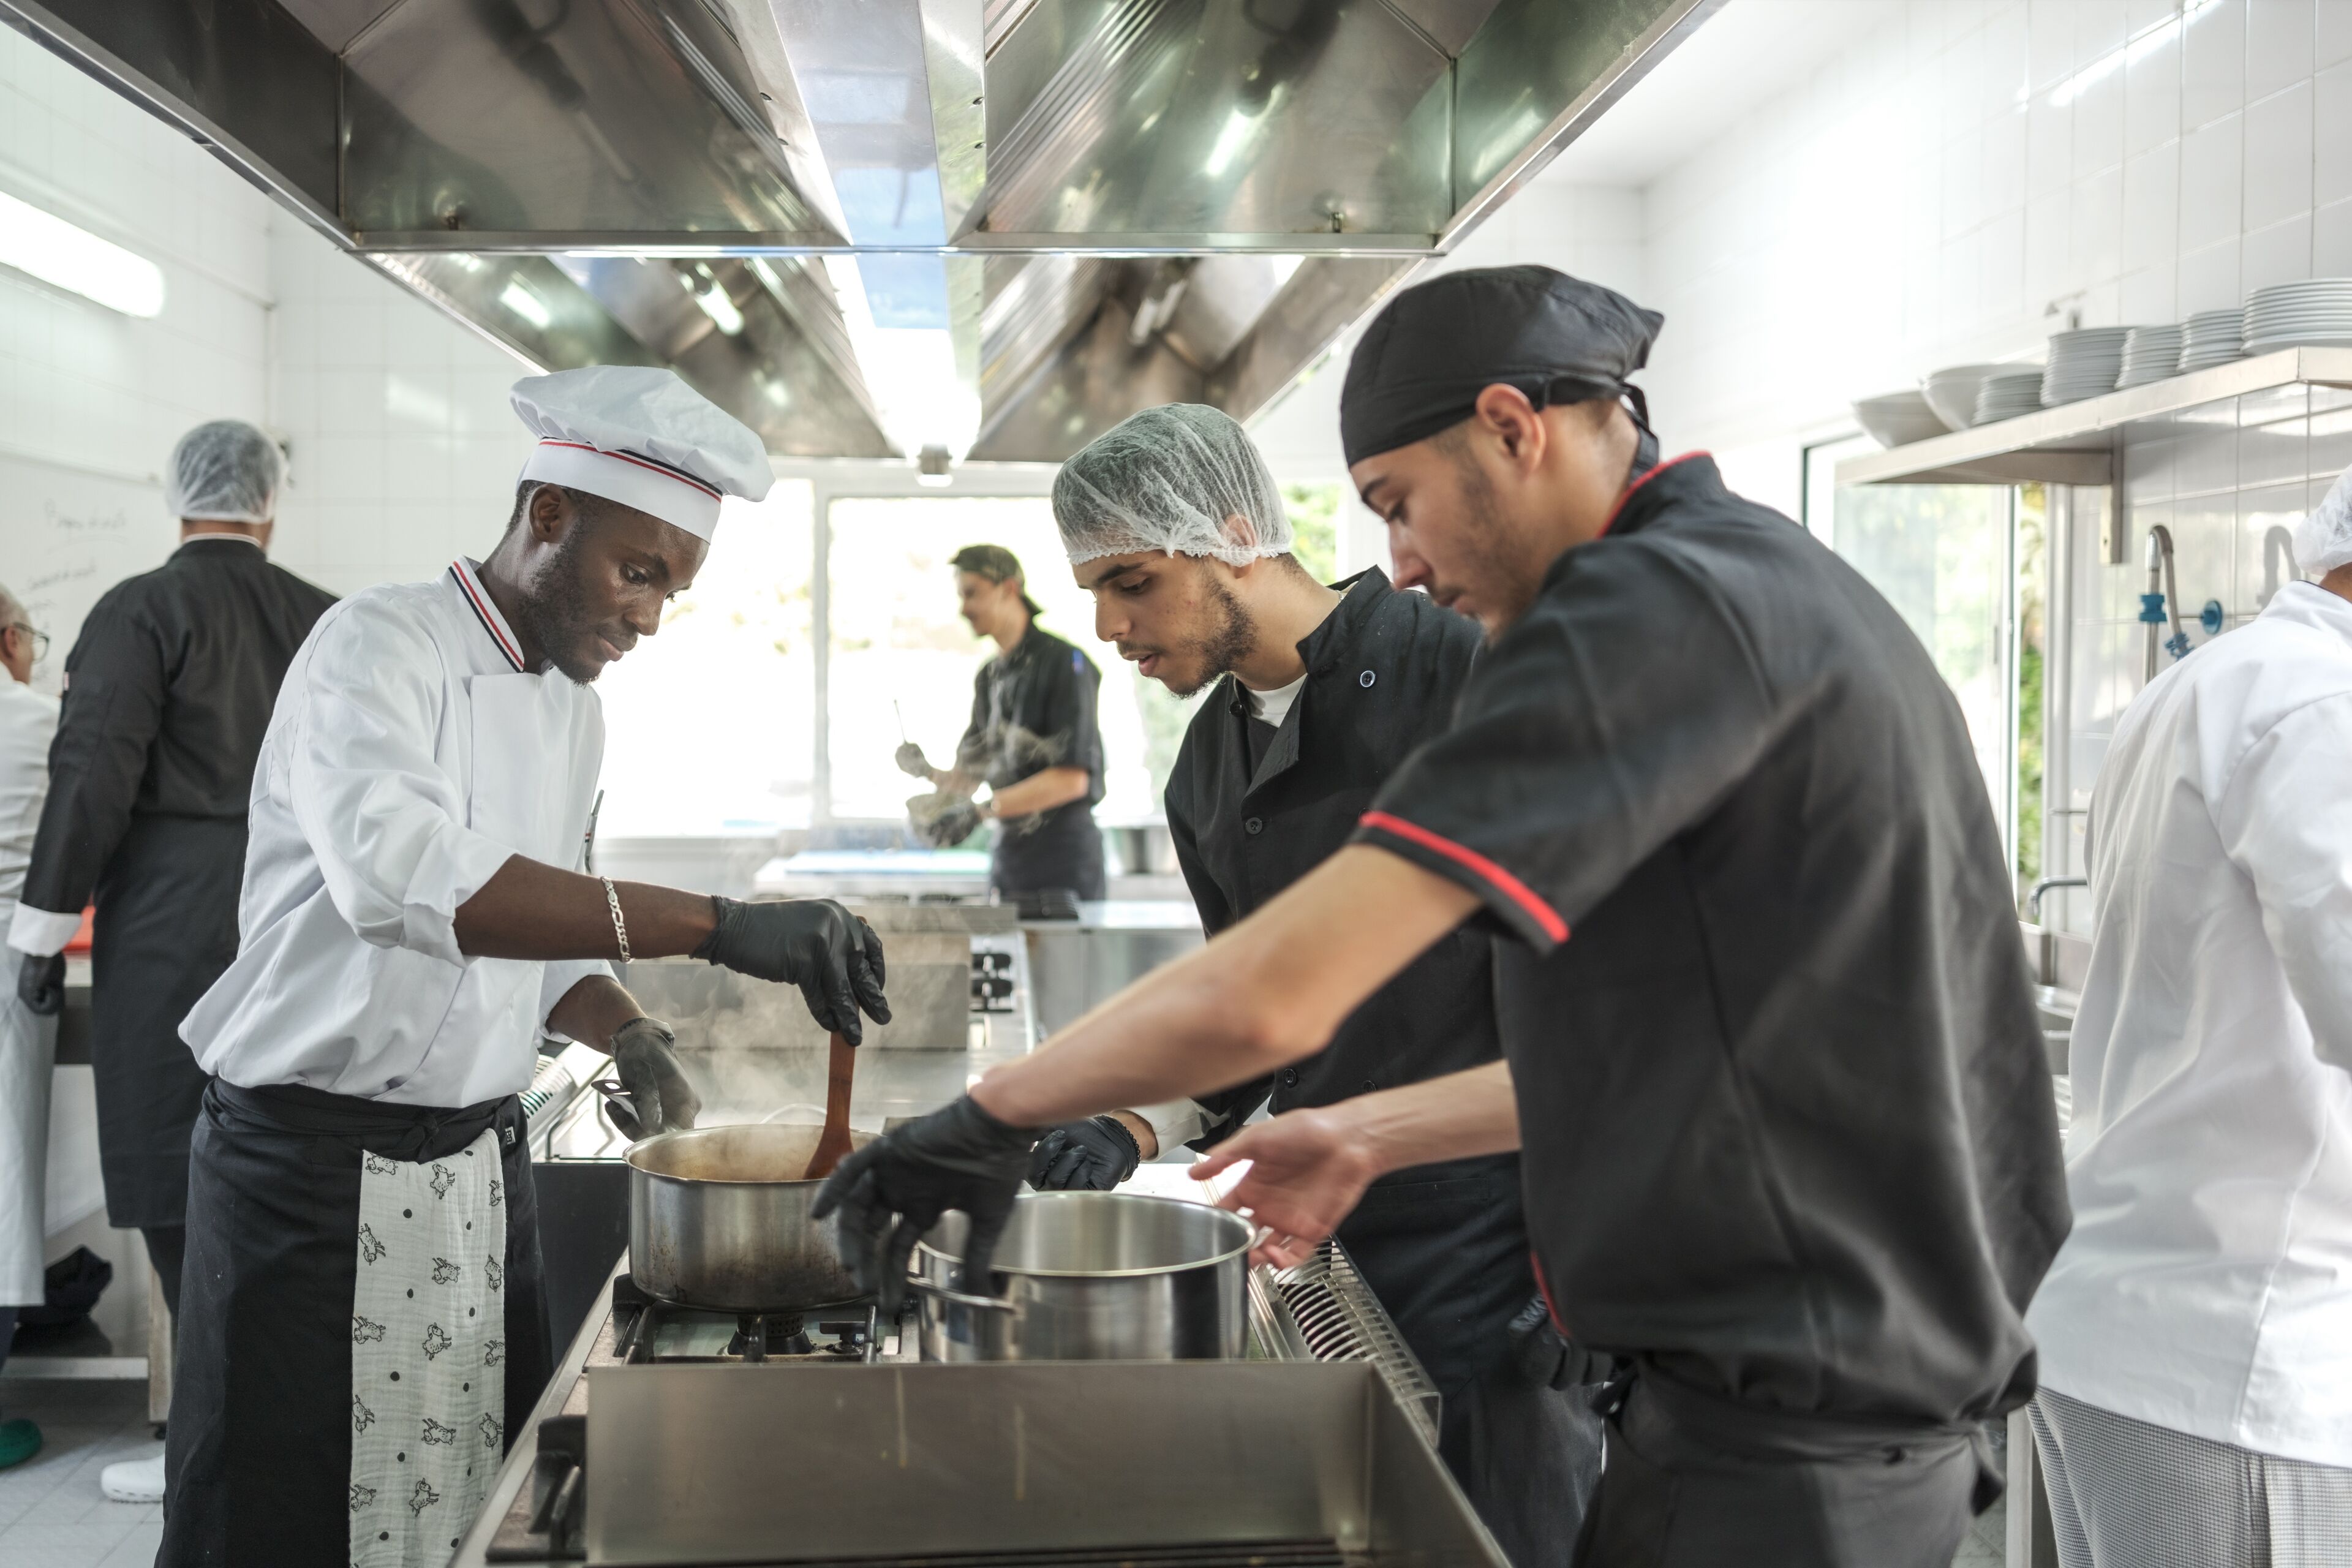 Une équipe de chefs diversifiée cuisine et prépare des plats dans une cuisine de restaurant animée.